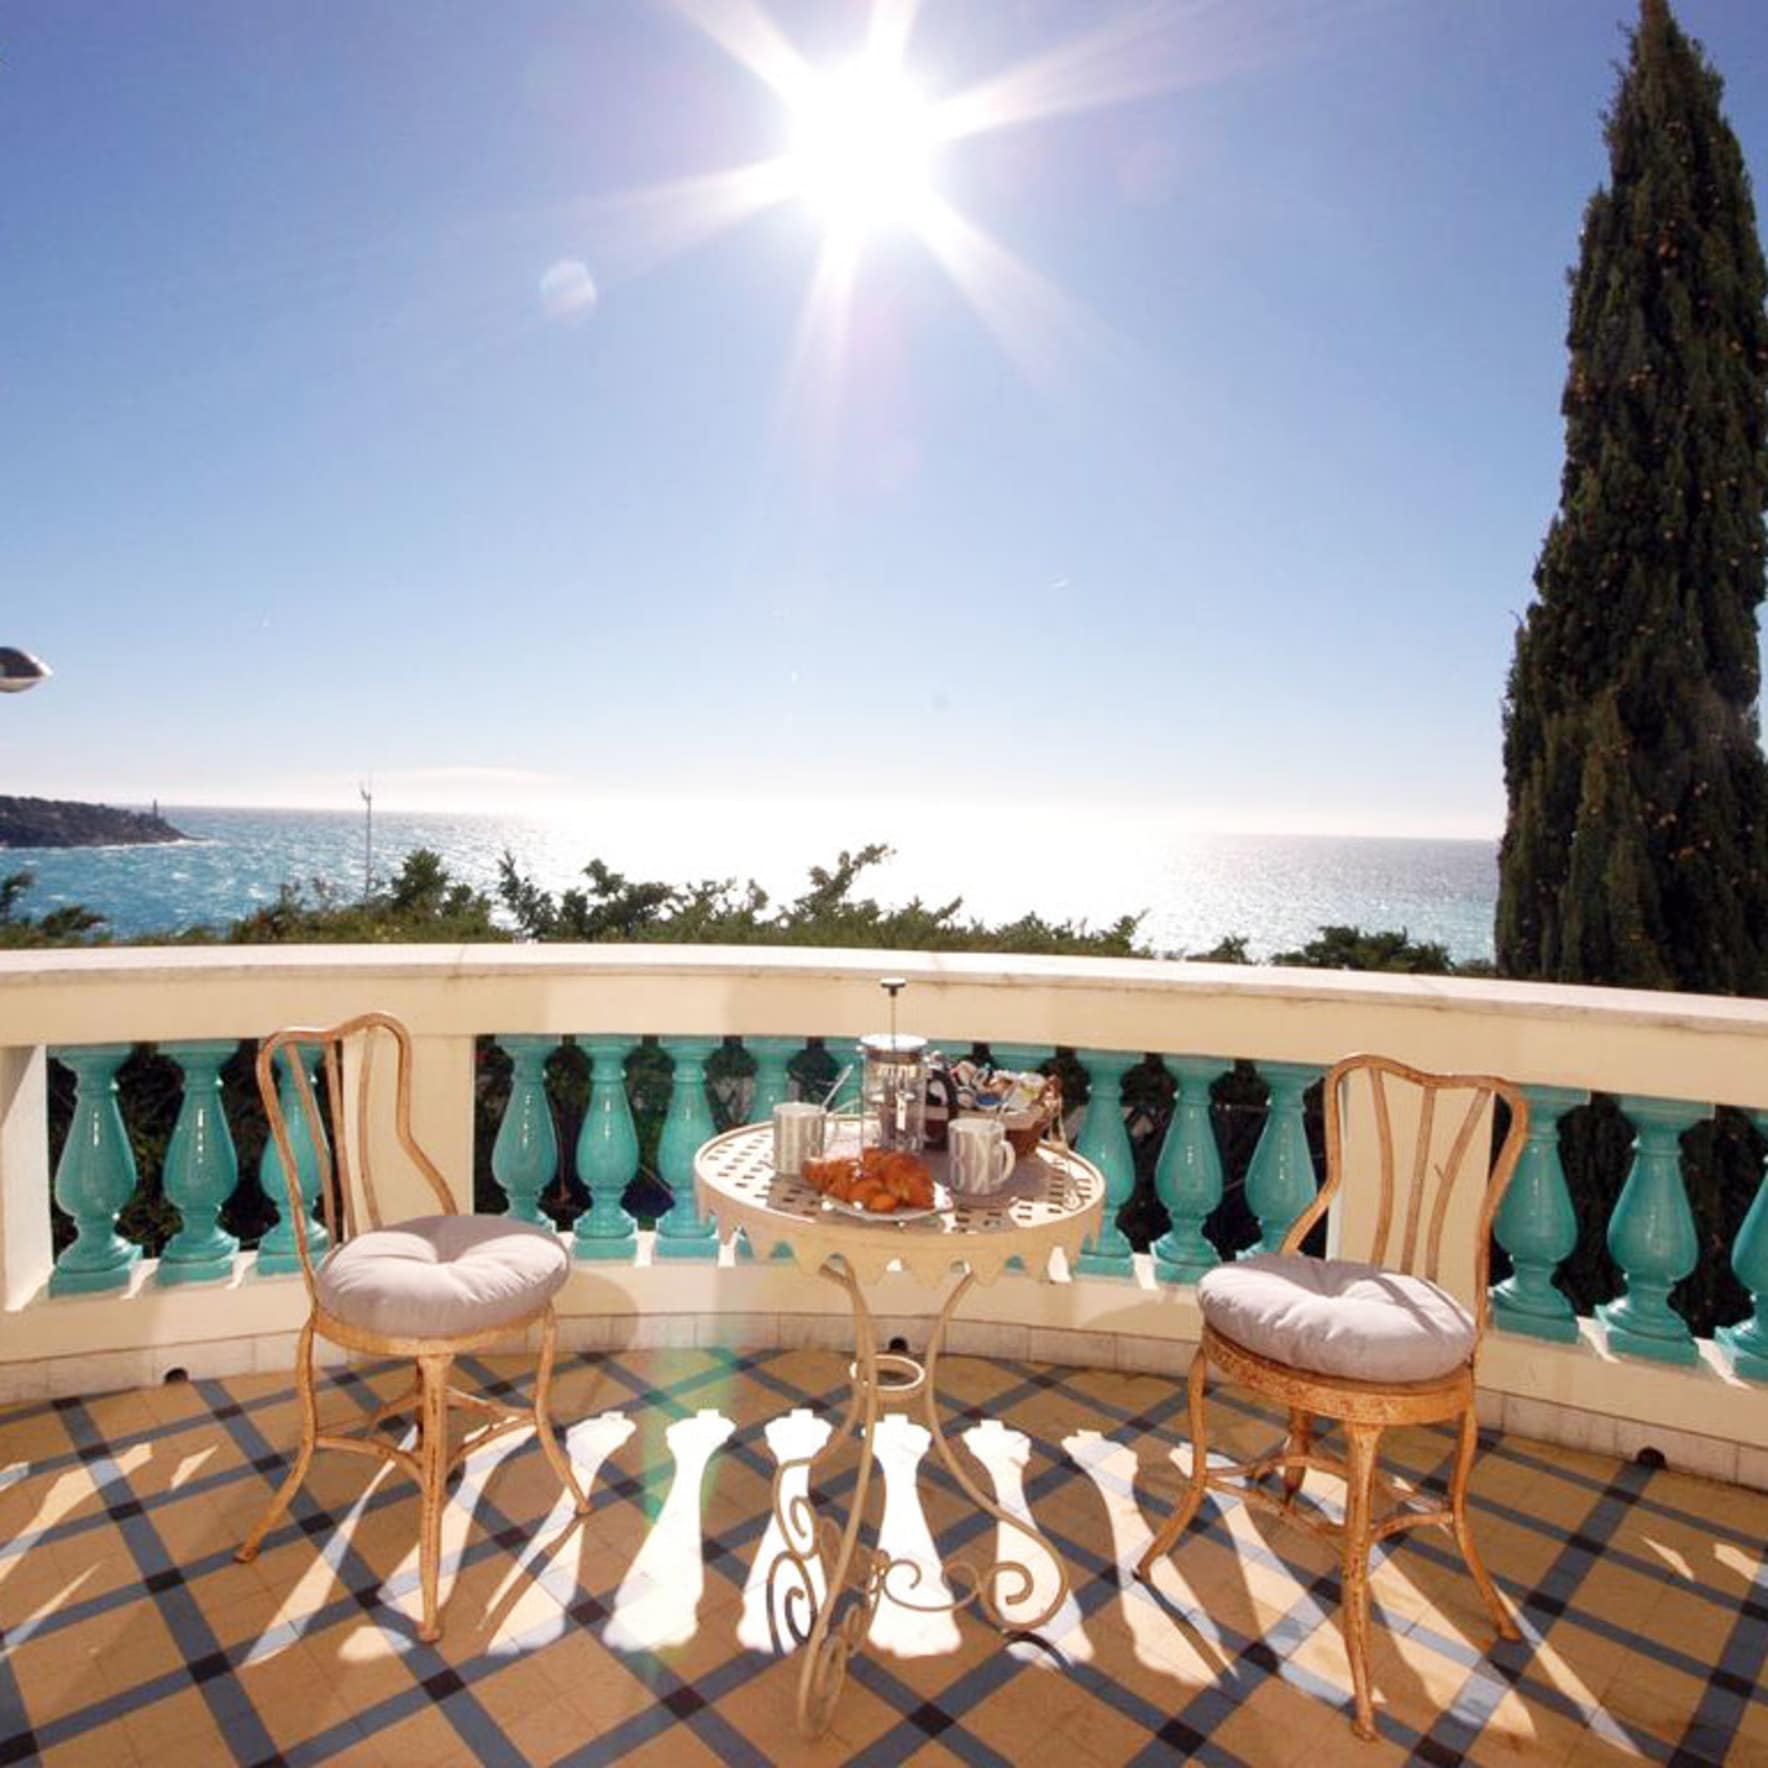 Location de vacances à Nice : villa en bord de mer avec une vue à couper le souffle